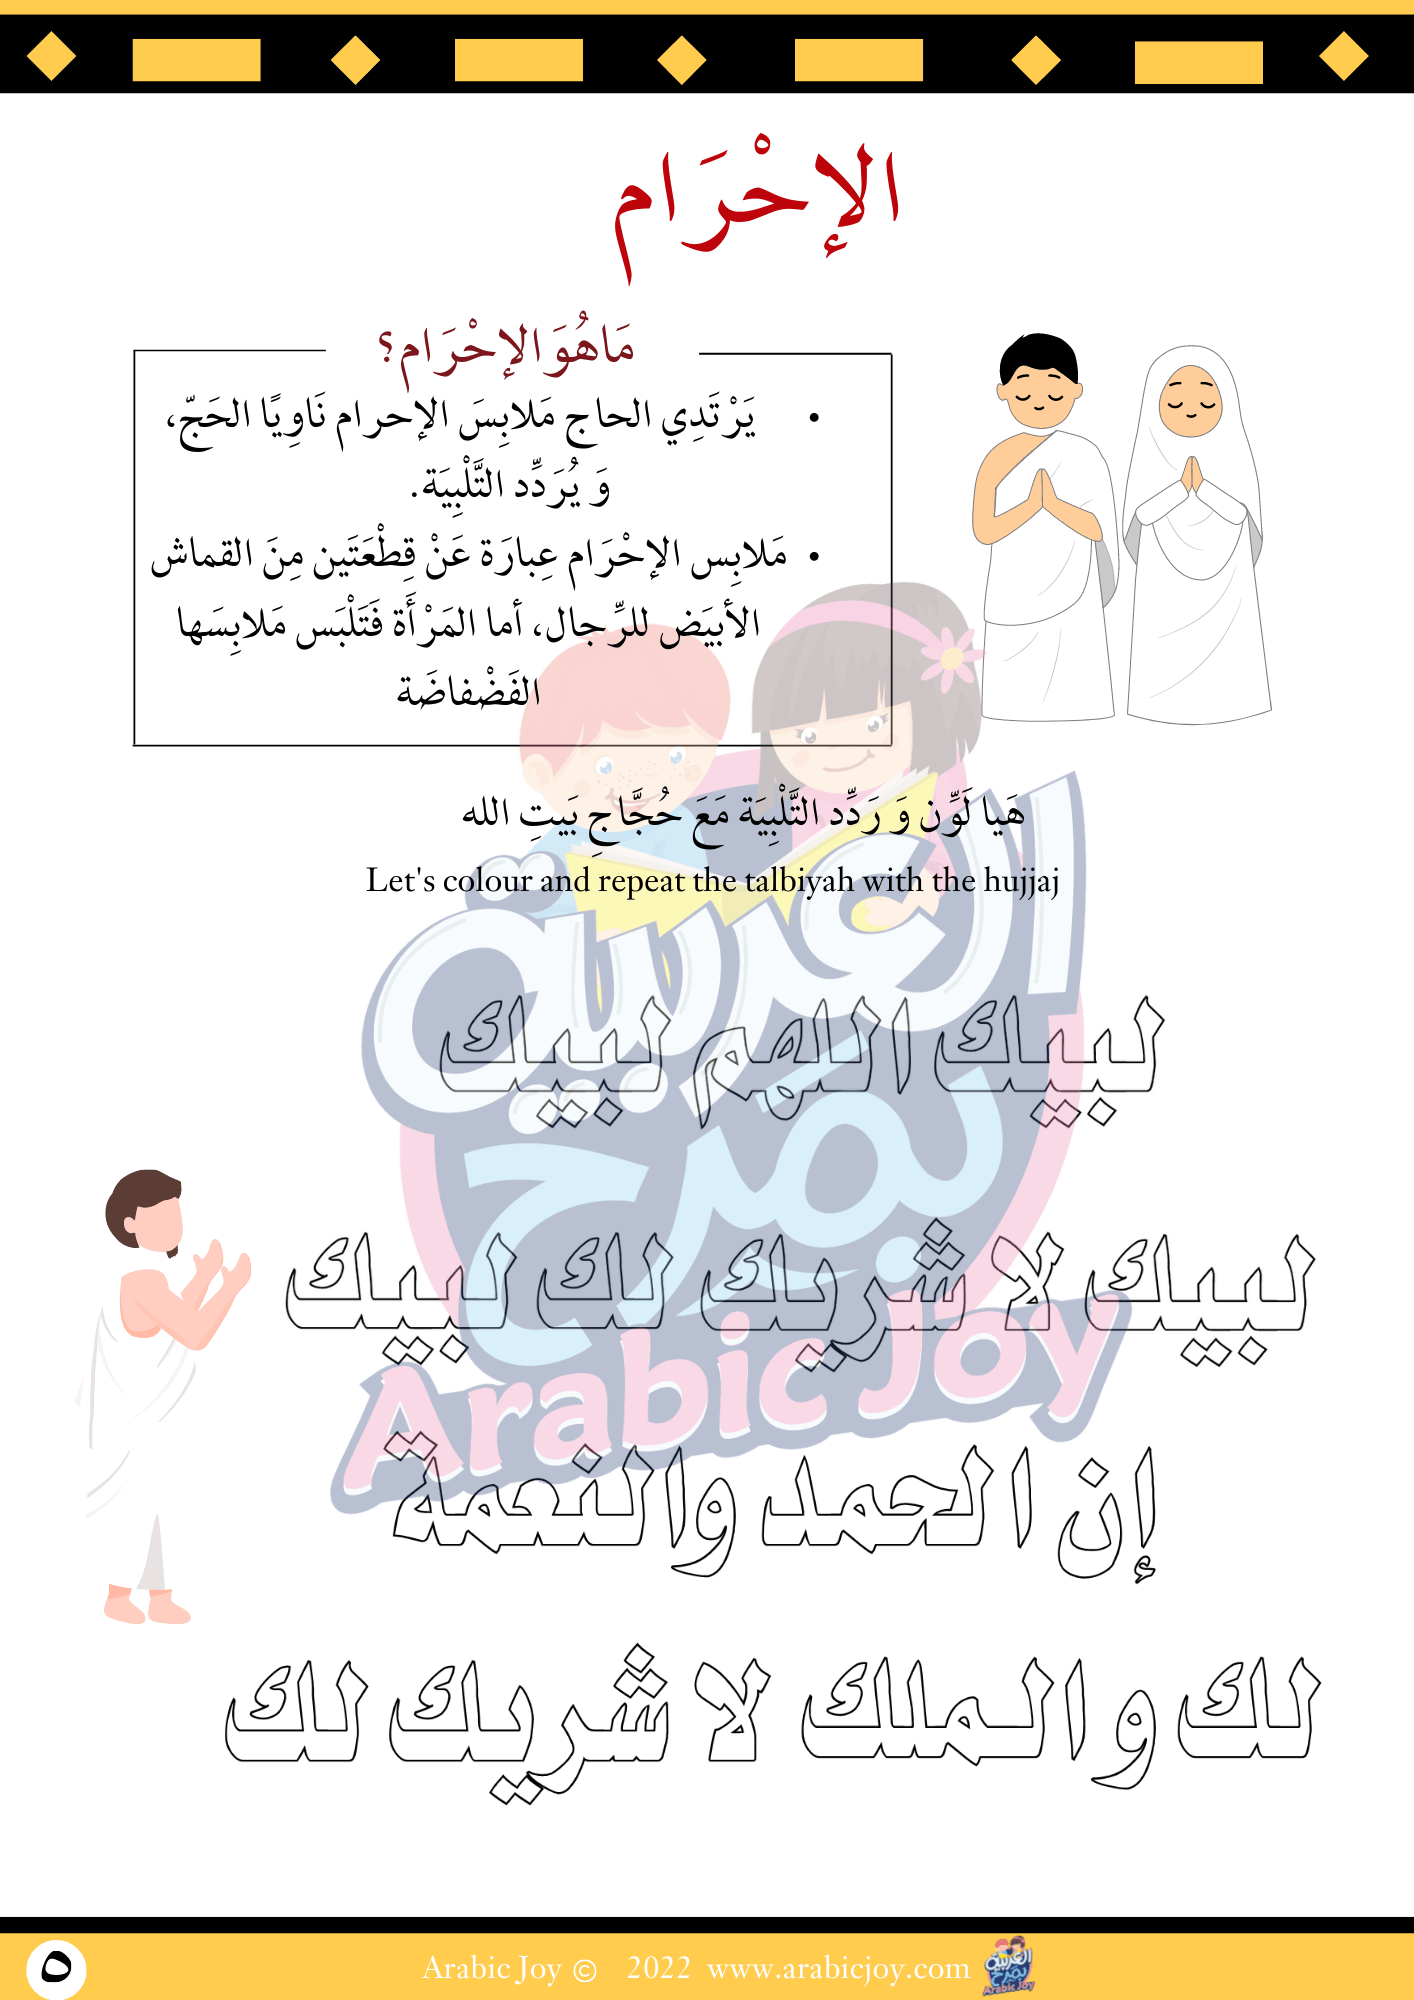 ملف نشاطات الحج 27 صفحة للتنزيل الالكتروني - Hajj Activity Pack 27 Pages | DIGITAL DOWNLOAD - Arabic Joy